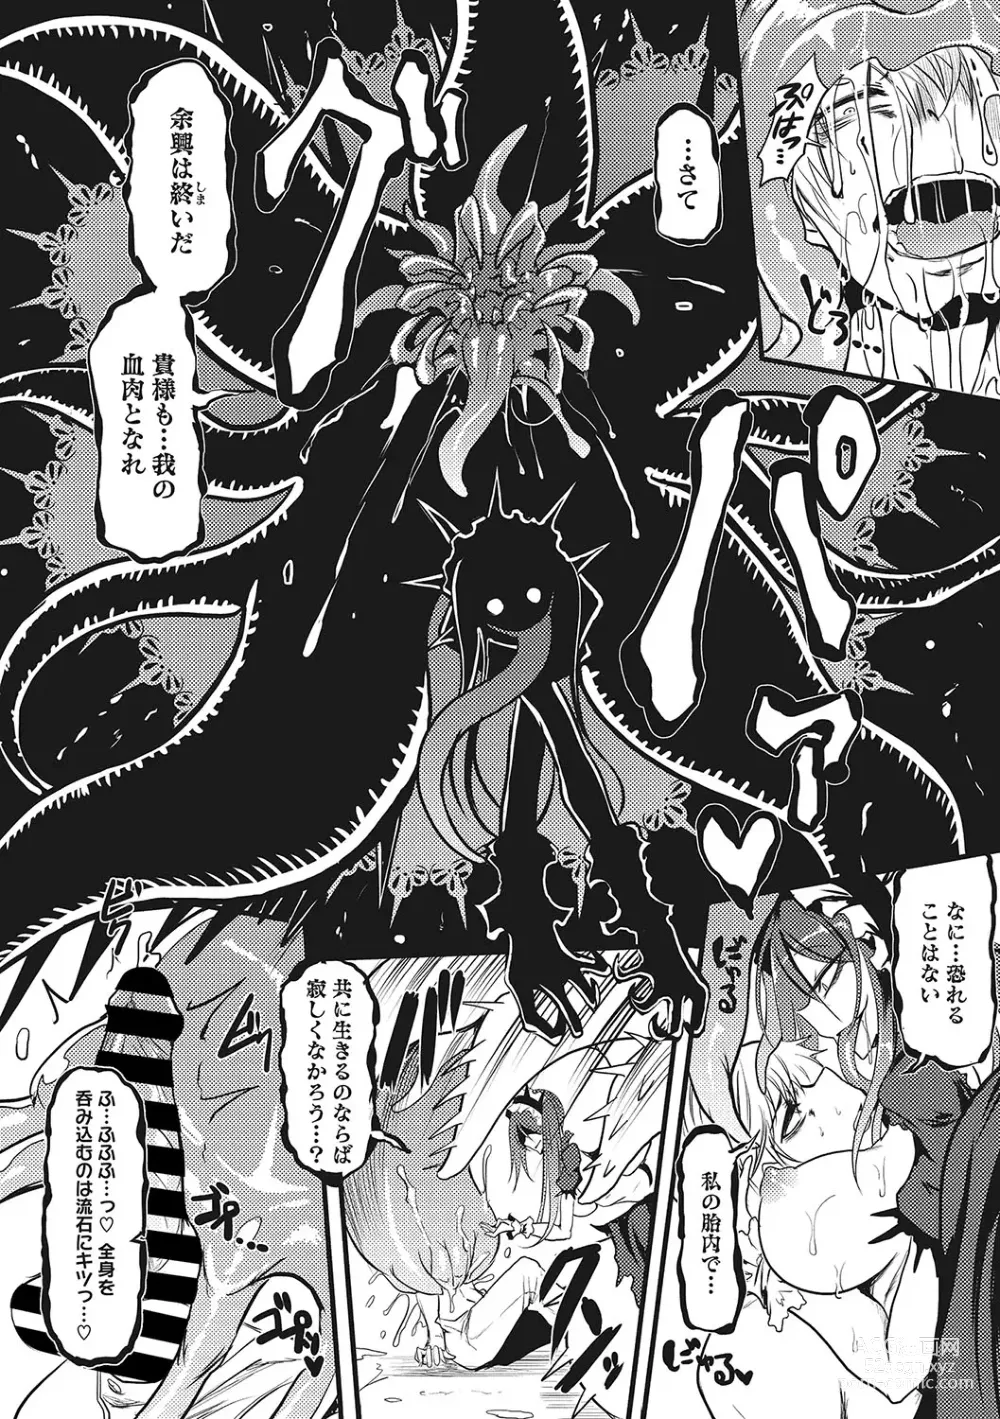 Page 289 of manga Sanpai Shoujo